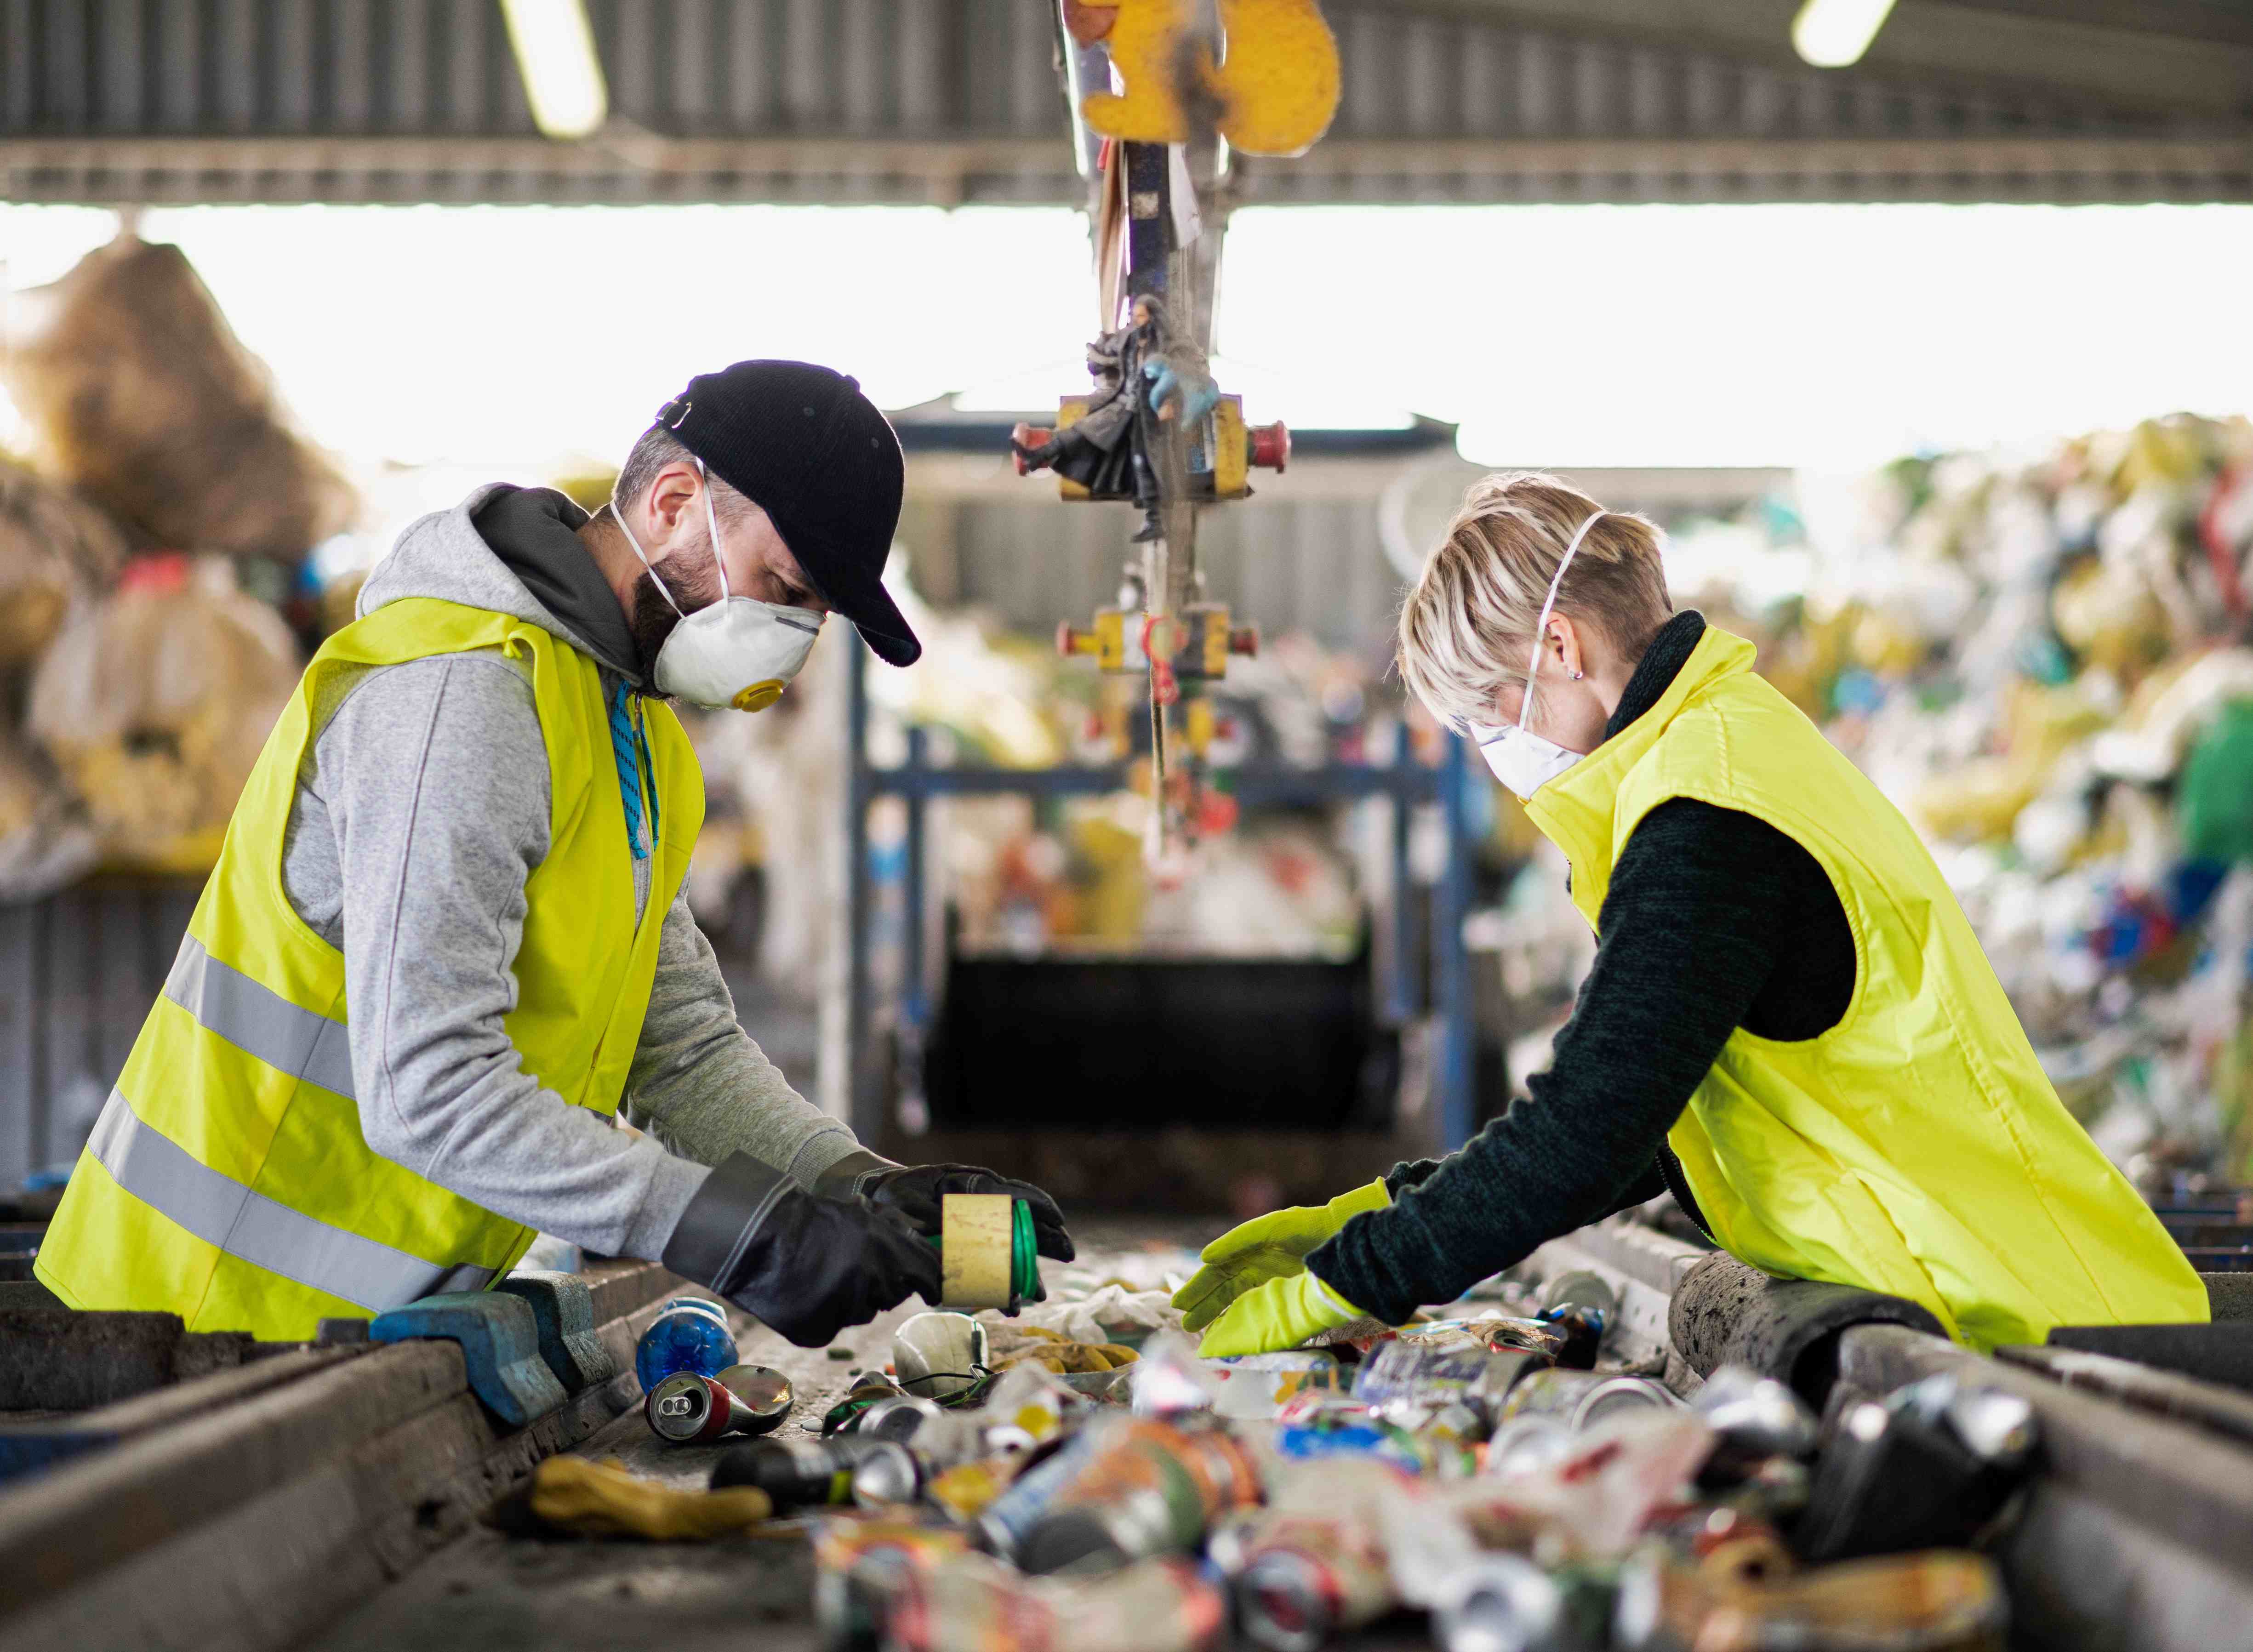 Braskem anuncia aquisição de matéria-prima a partir de resíduos plásticos da Vitol SA, produzida pela WPU - Waste Plastic Upcycling A/S, na Dinamarca 